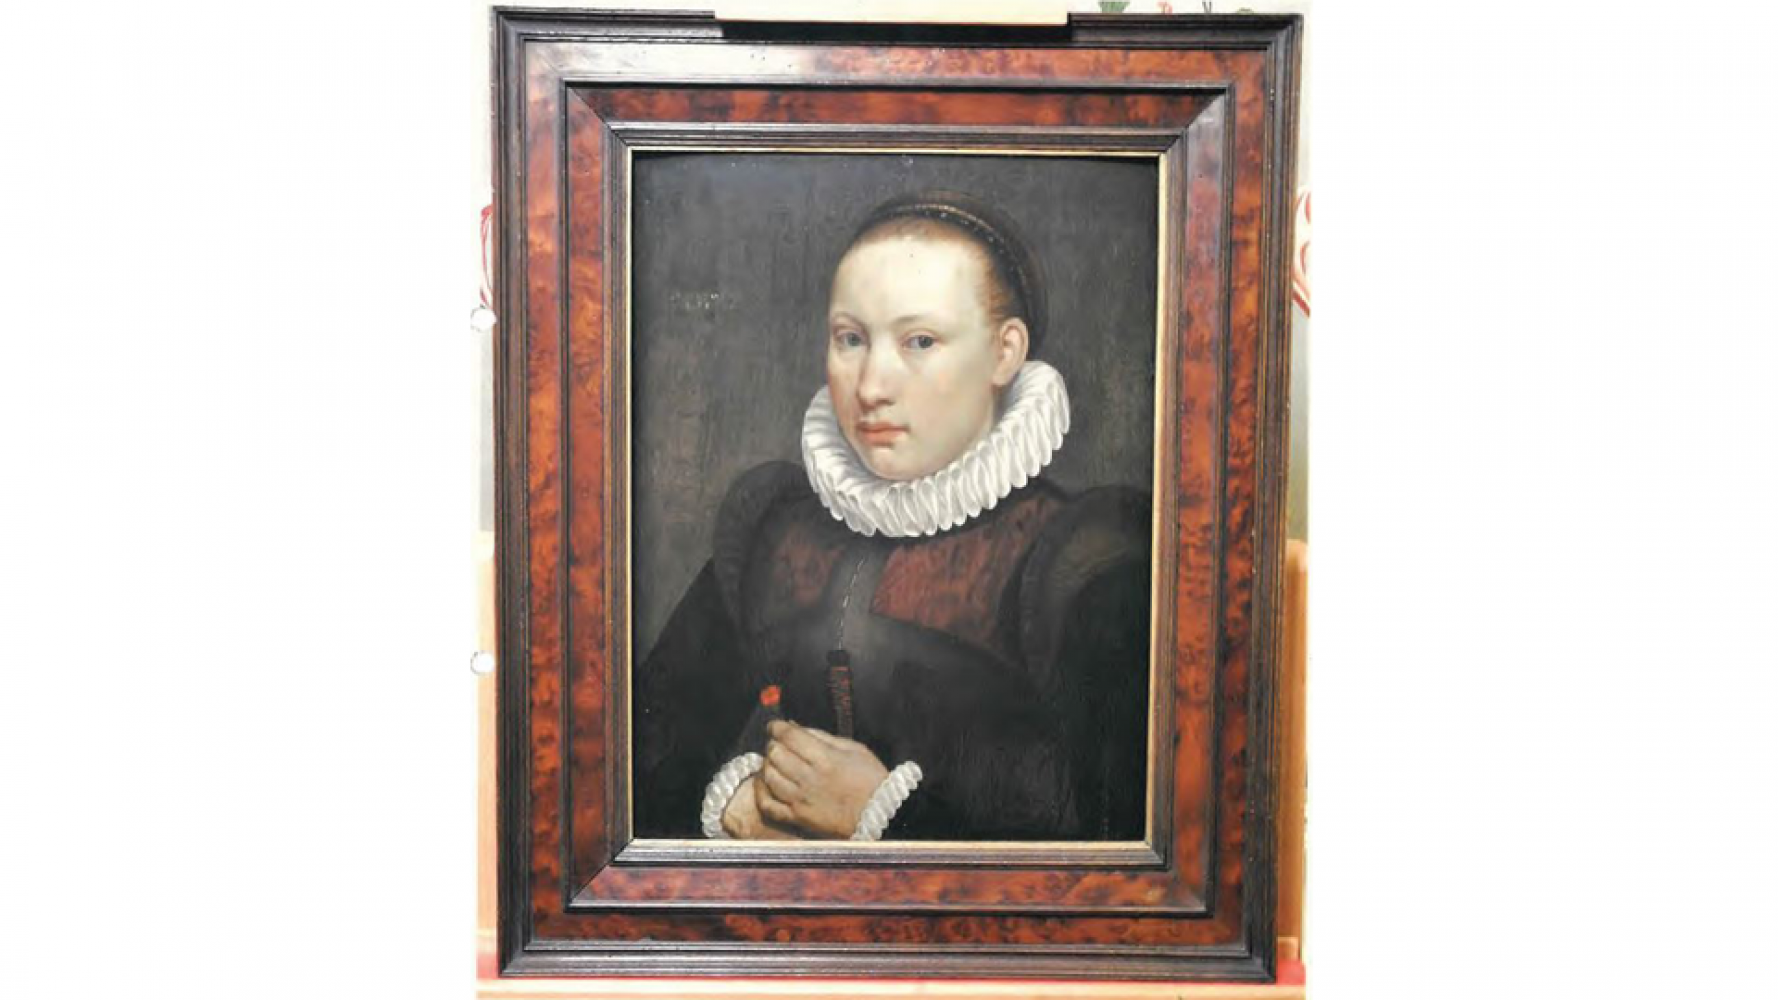 Das gestohlene Gemälde "Potrait einer jungen Frau" von Pieter Aertsen